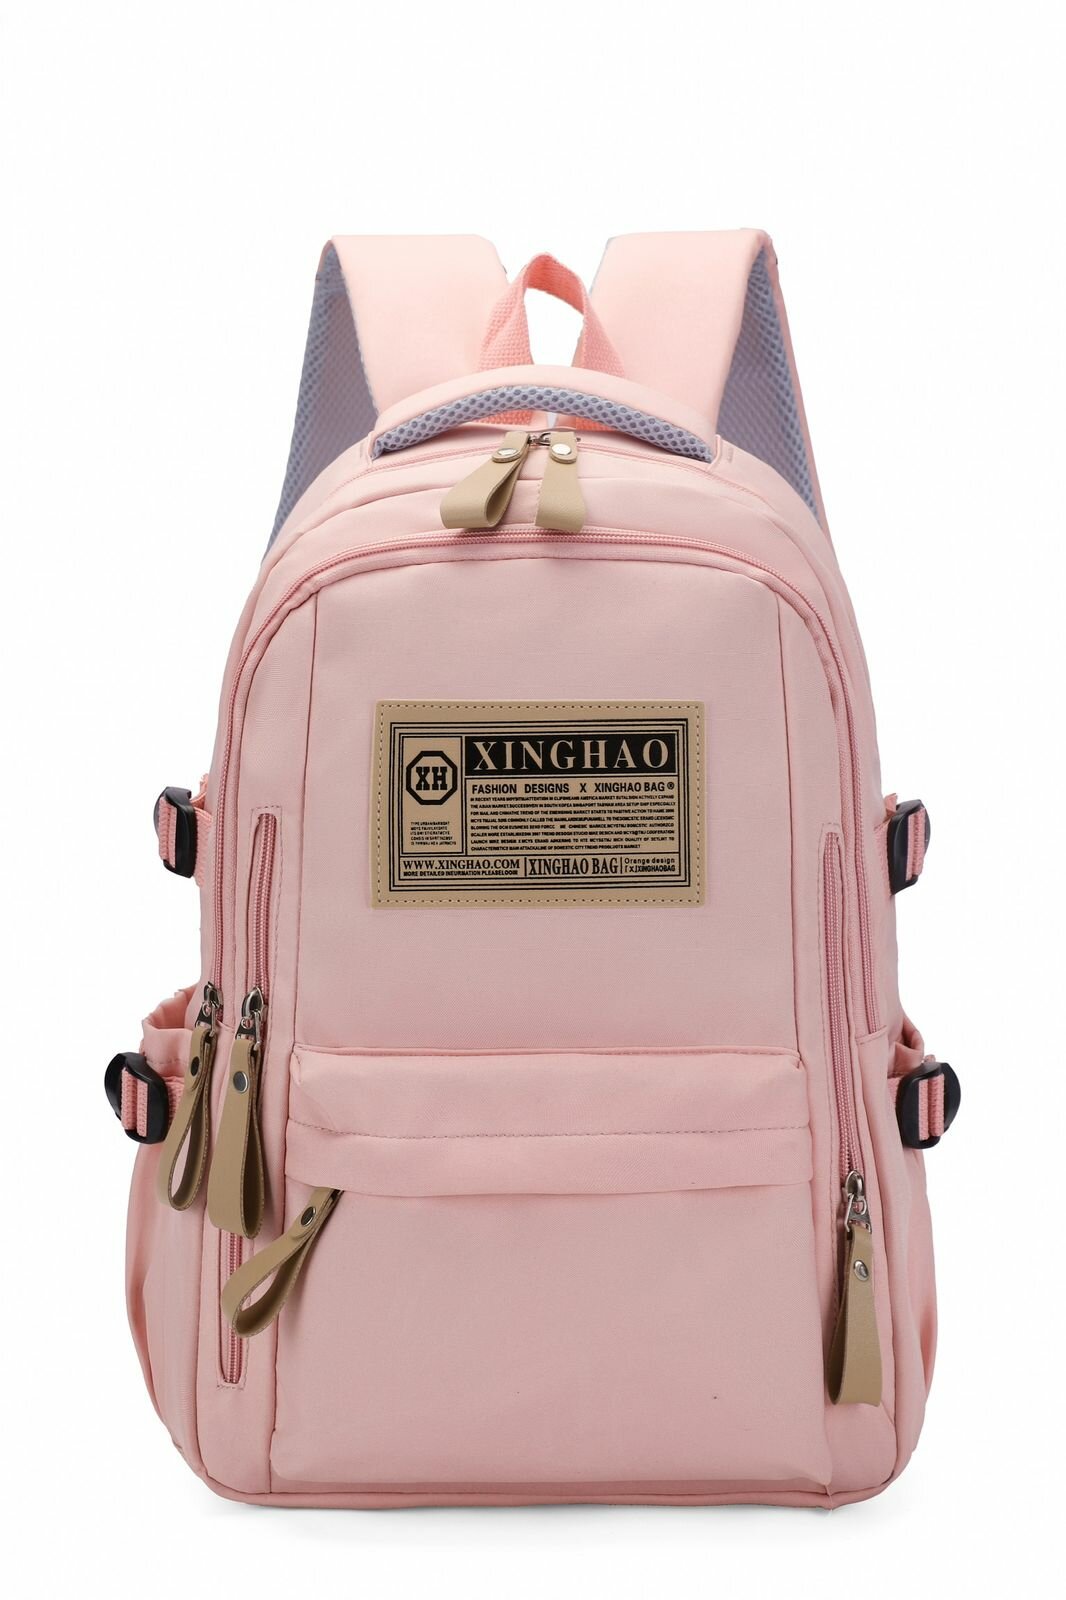 Рюкзак детский и молодежный, для школы и учебы, на работу и на прогулку, в отдых и путешествие, для мальчиков и девочек Xinghao4